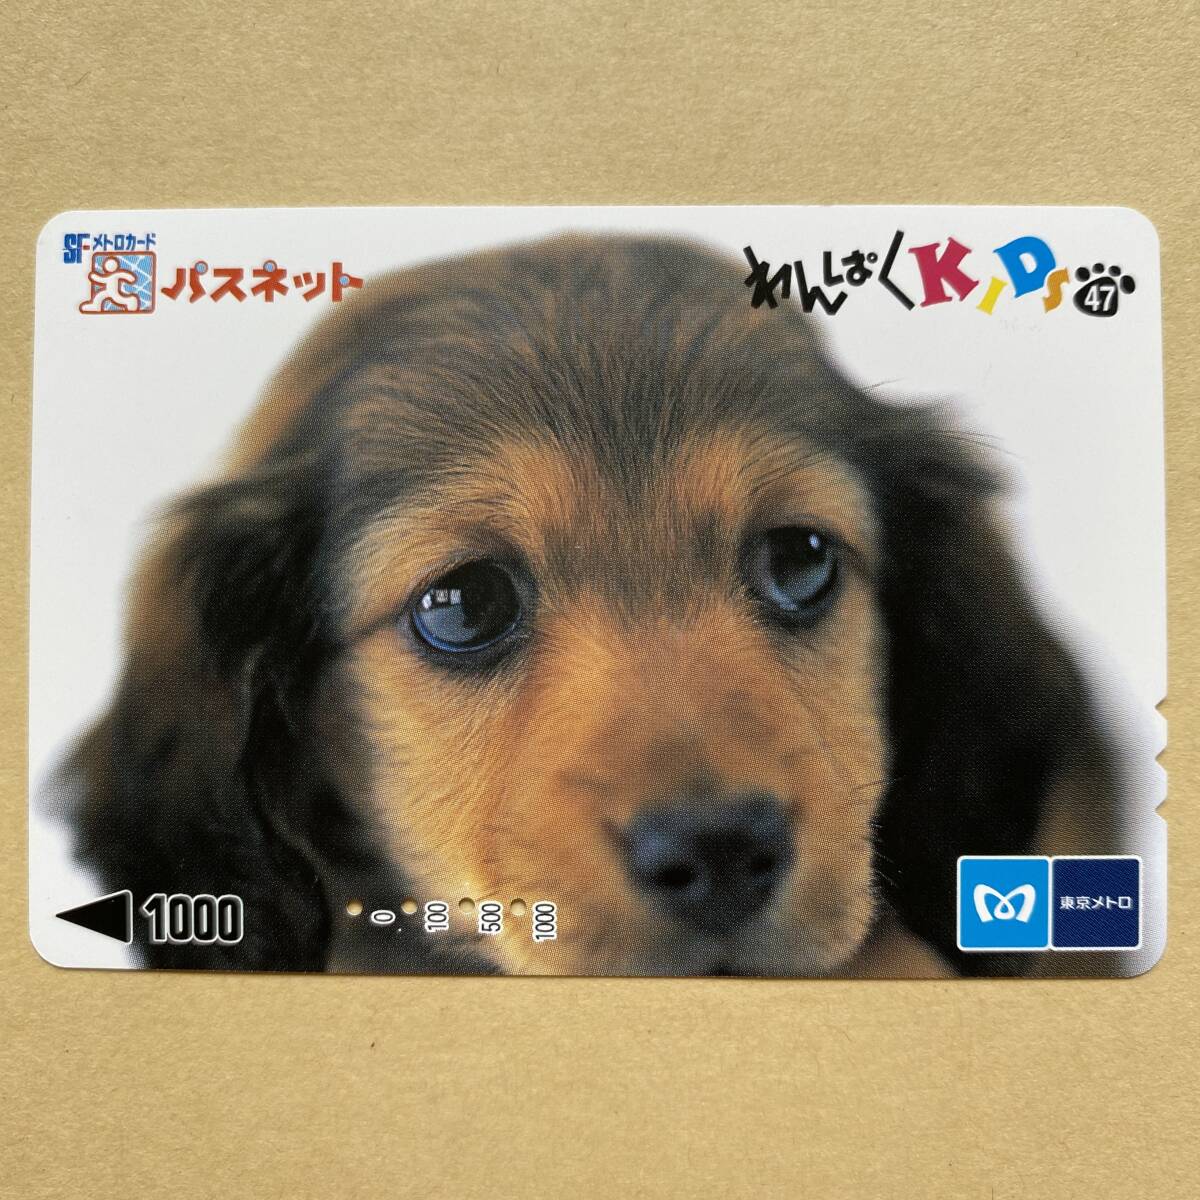 【使用済】 パスネット 営団地下鉄 東京メトロ わんぱくKIDS47 犬_画像1